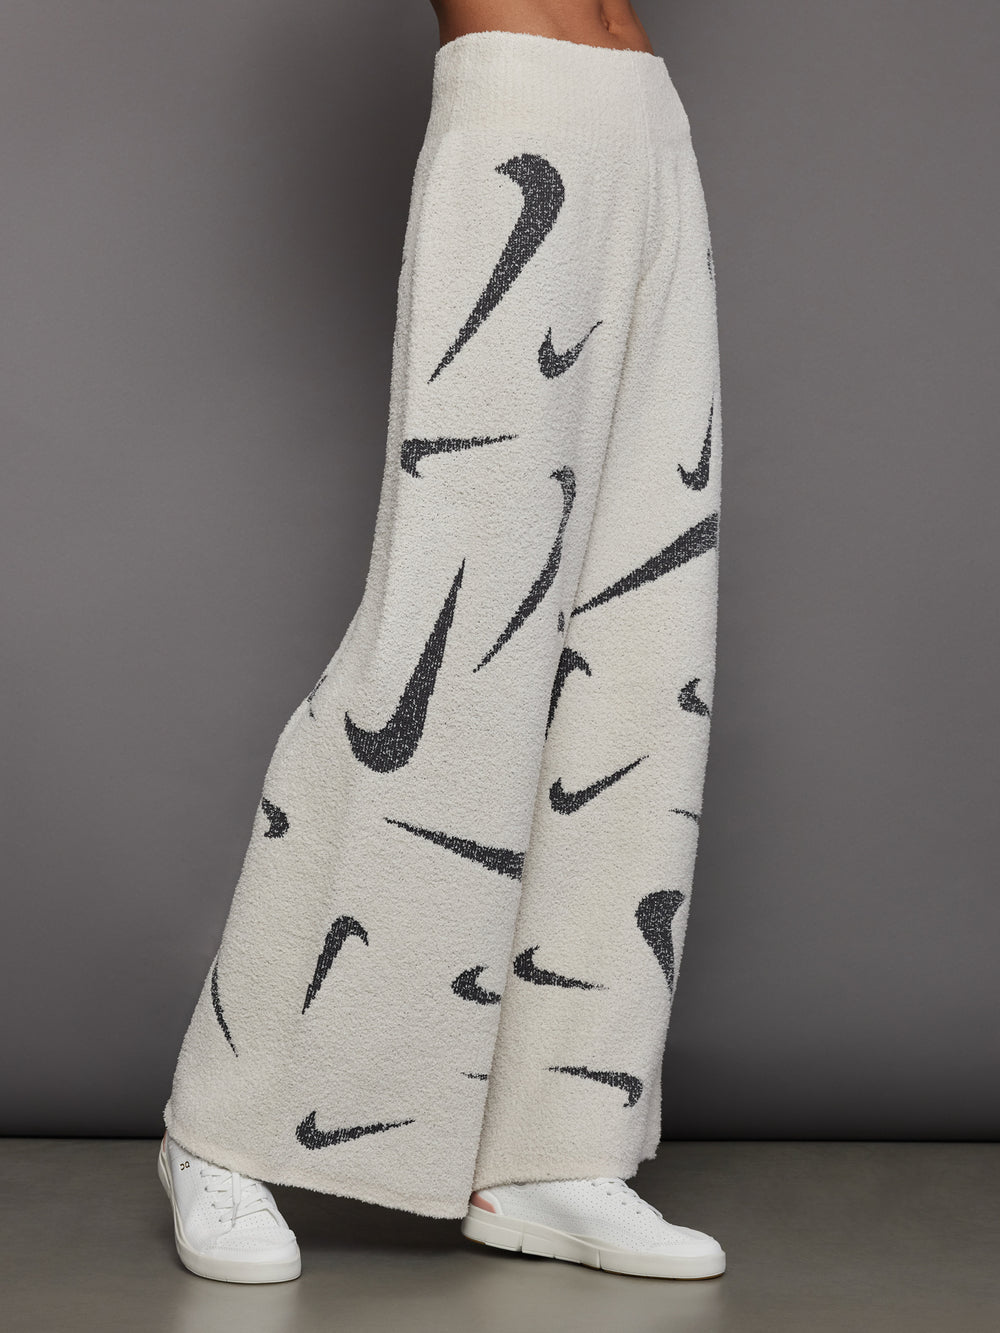 Nike Sportswear Sport Shine Women's 1/4-Zip Woven Jacket